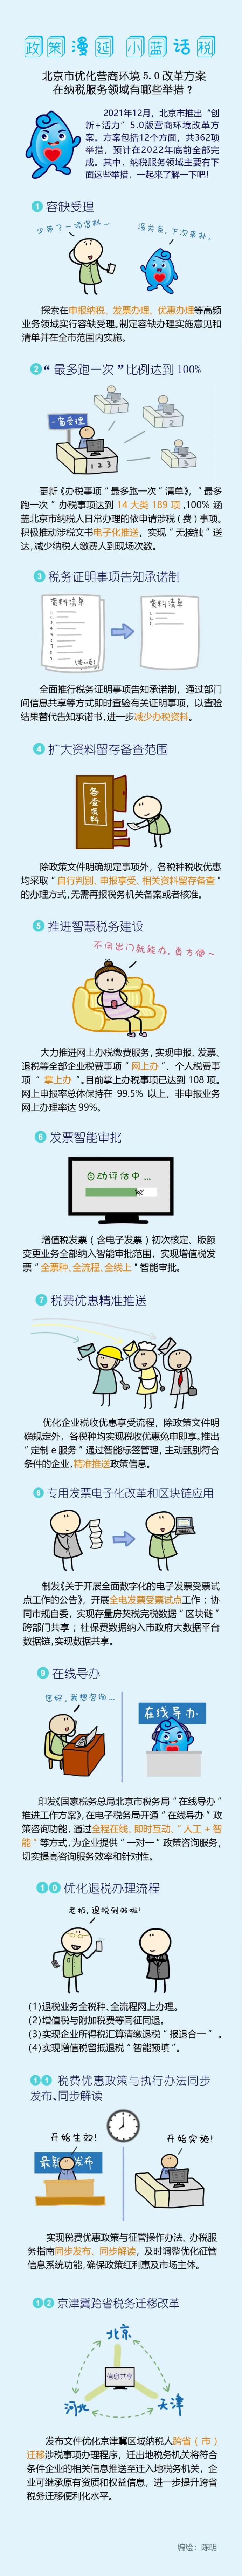 北京市优化营商环境5.0改革方案在纳税服务领域有哪些举措